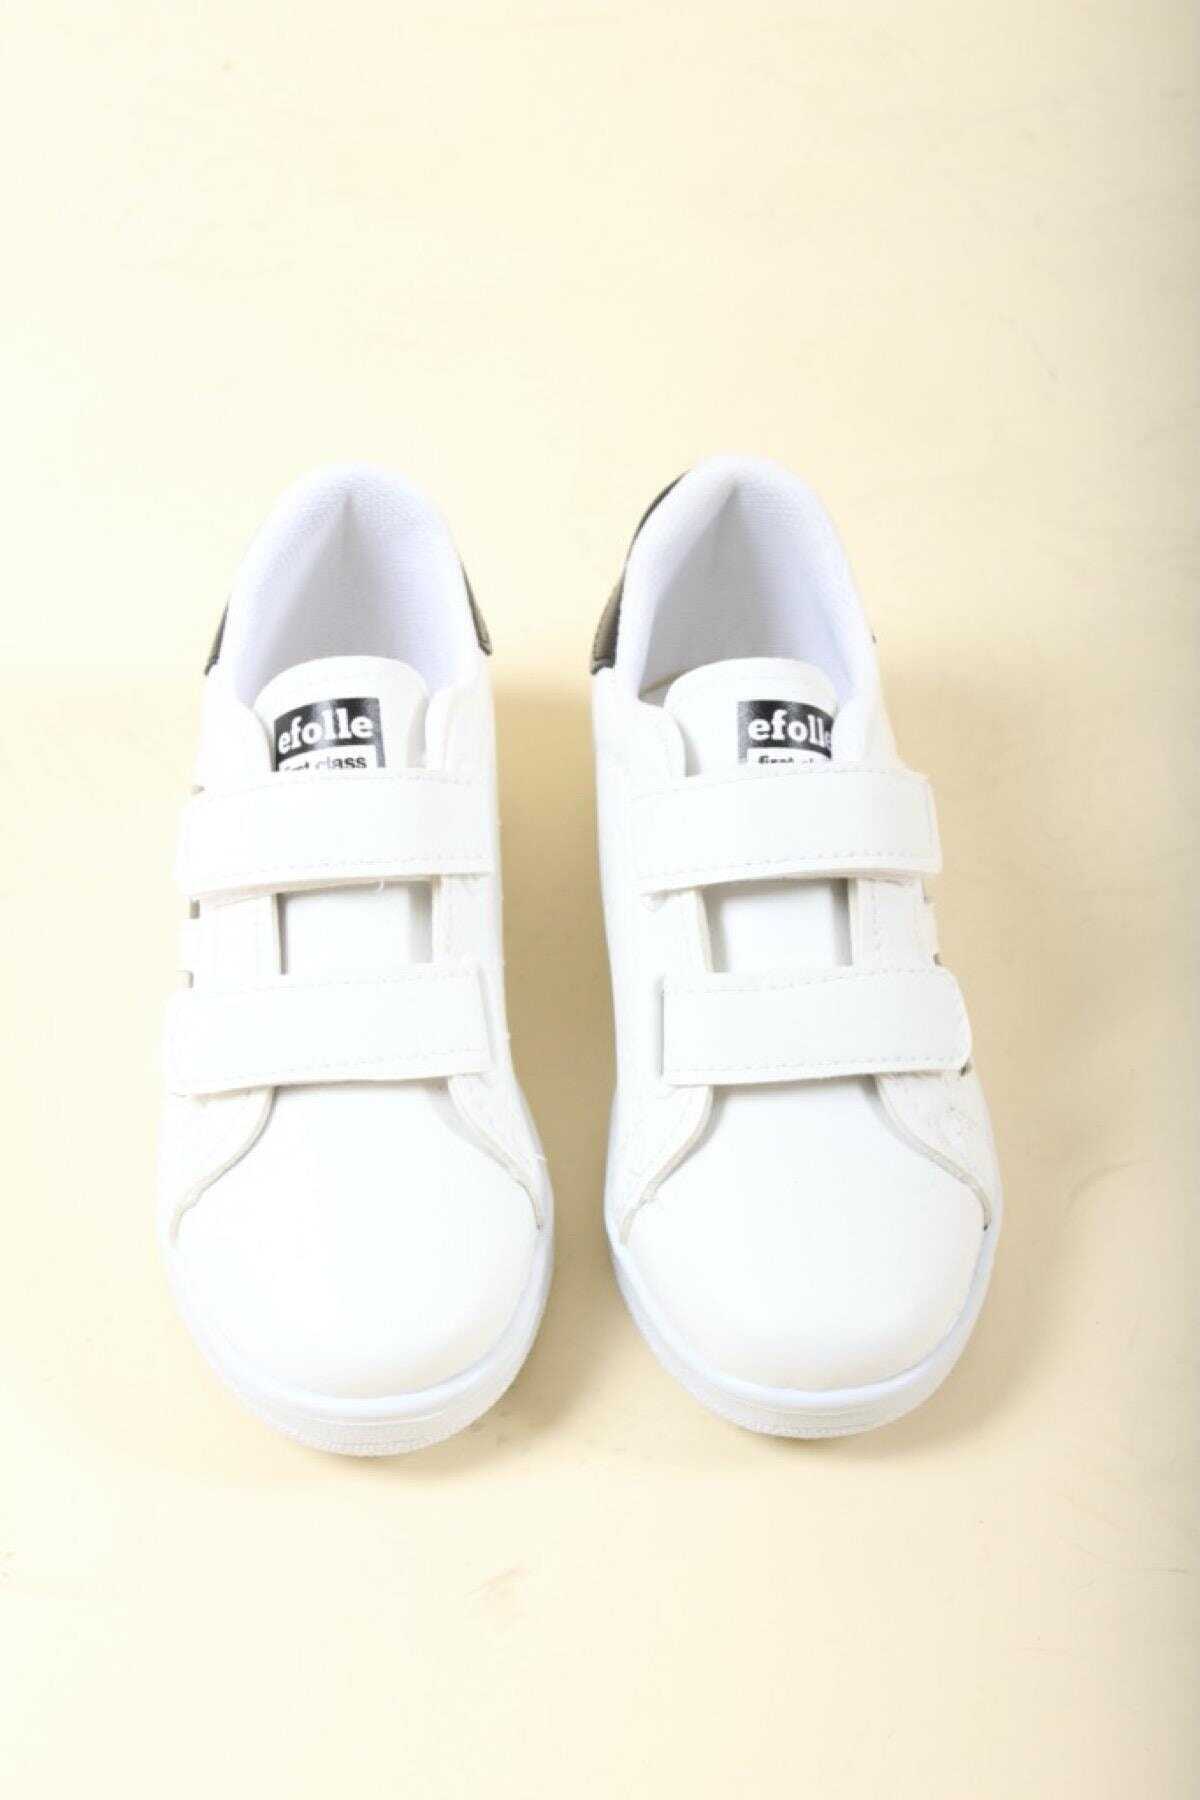 کفش اسپرت بچه گانه Efol Velcro سفید مشکی برند Oksit 